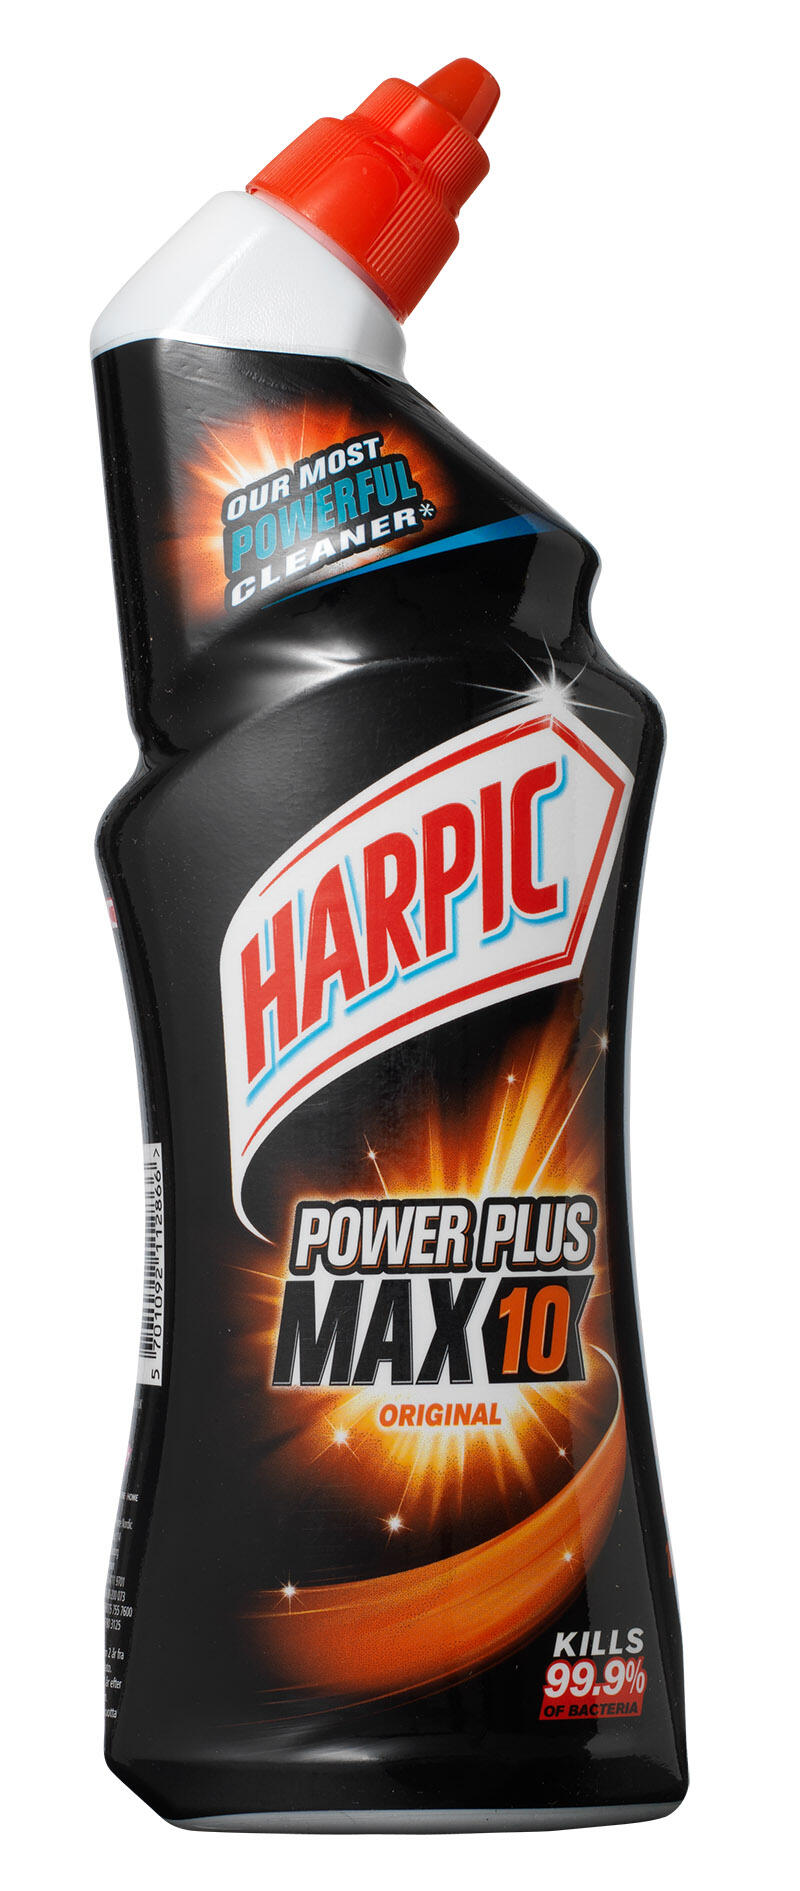 Power Plus Max 10 original Harpic